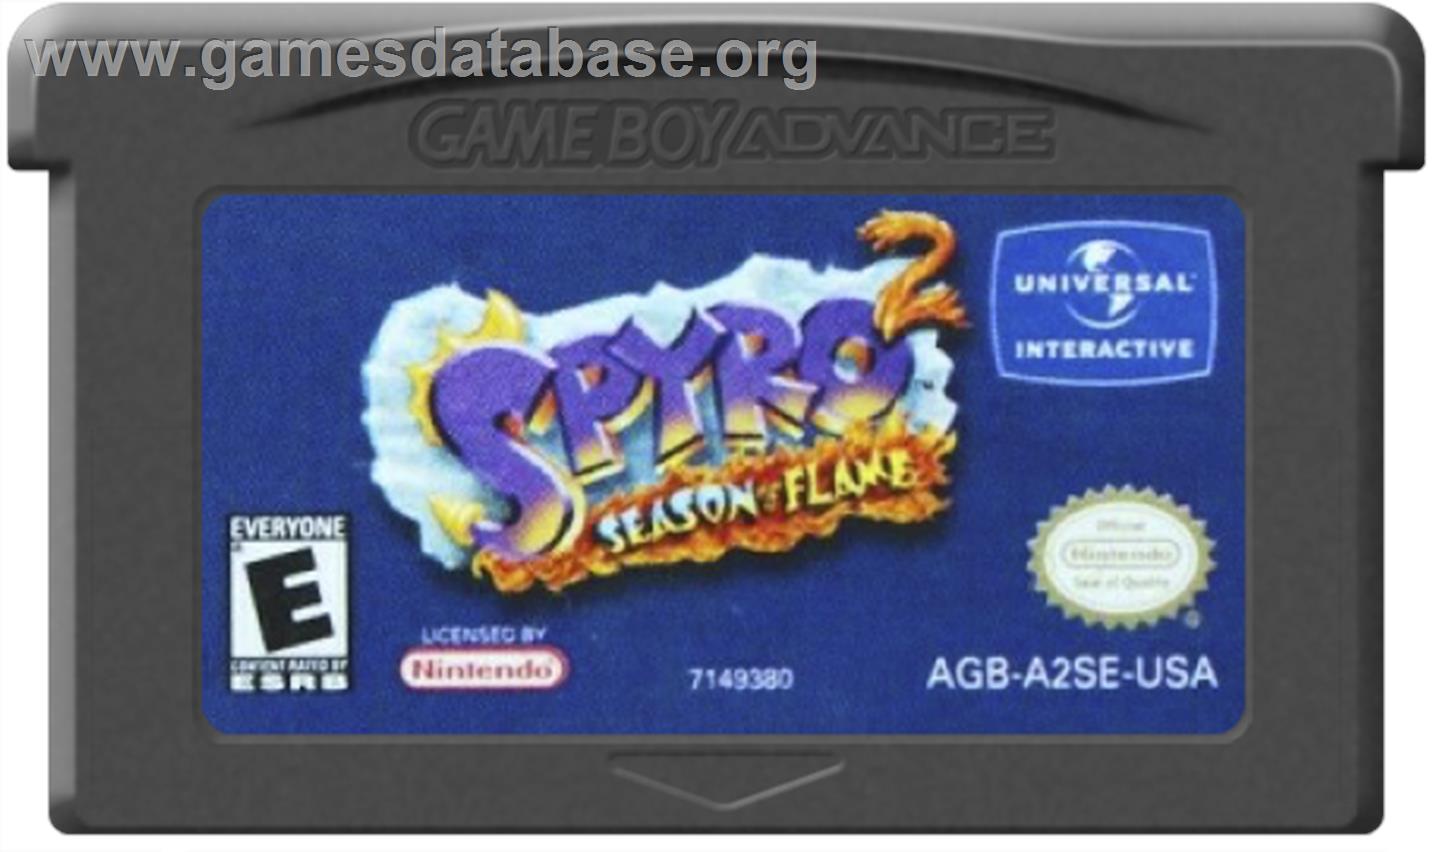 Spyro 2: Season of Flame - Nintendo Game Boy Advance - Artwork - Cartridge